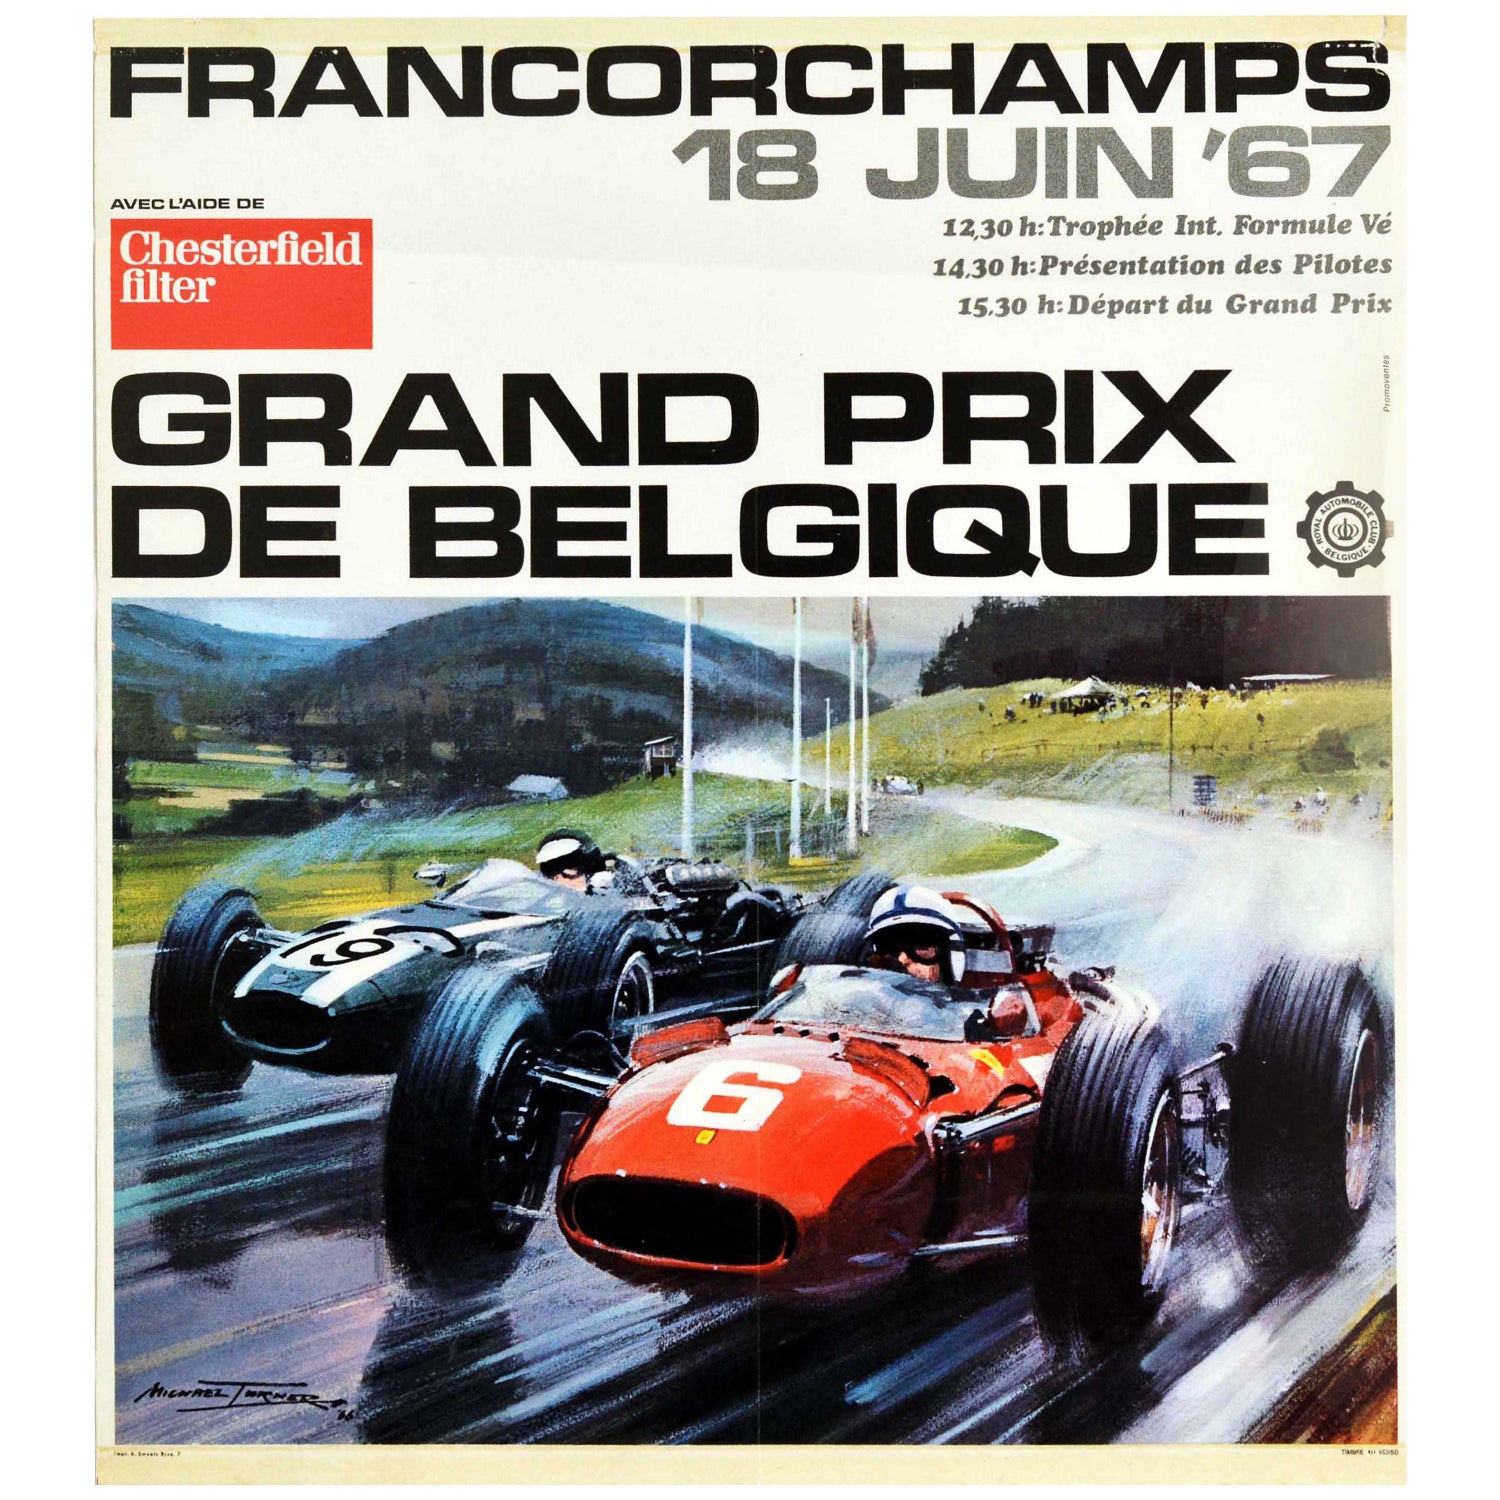 Vintage Motorsport Plakat 1959 Französischen Grand Prix Reims Formel 1 Retro